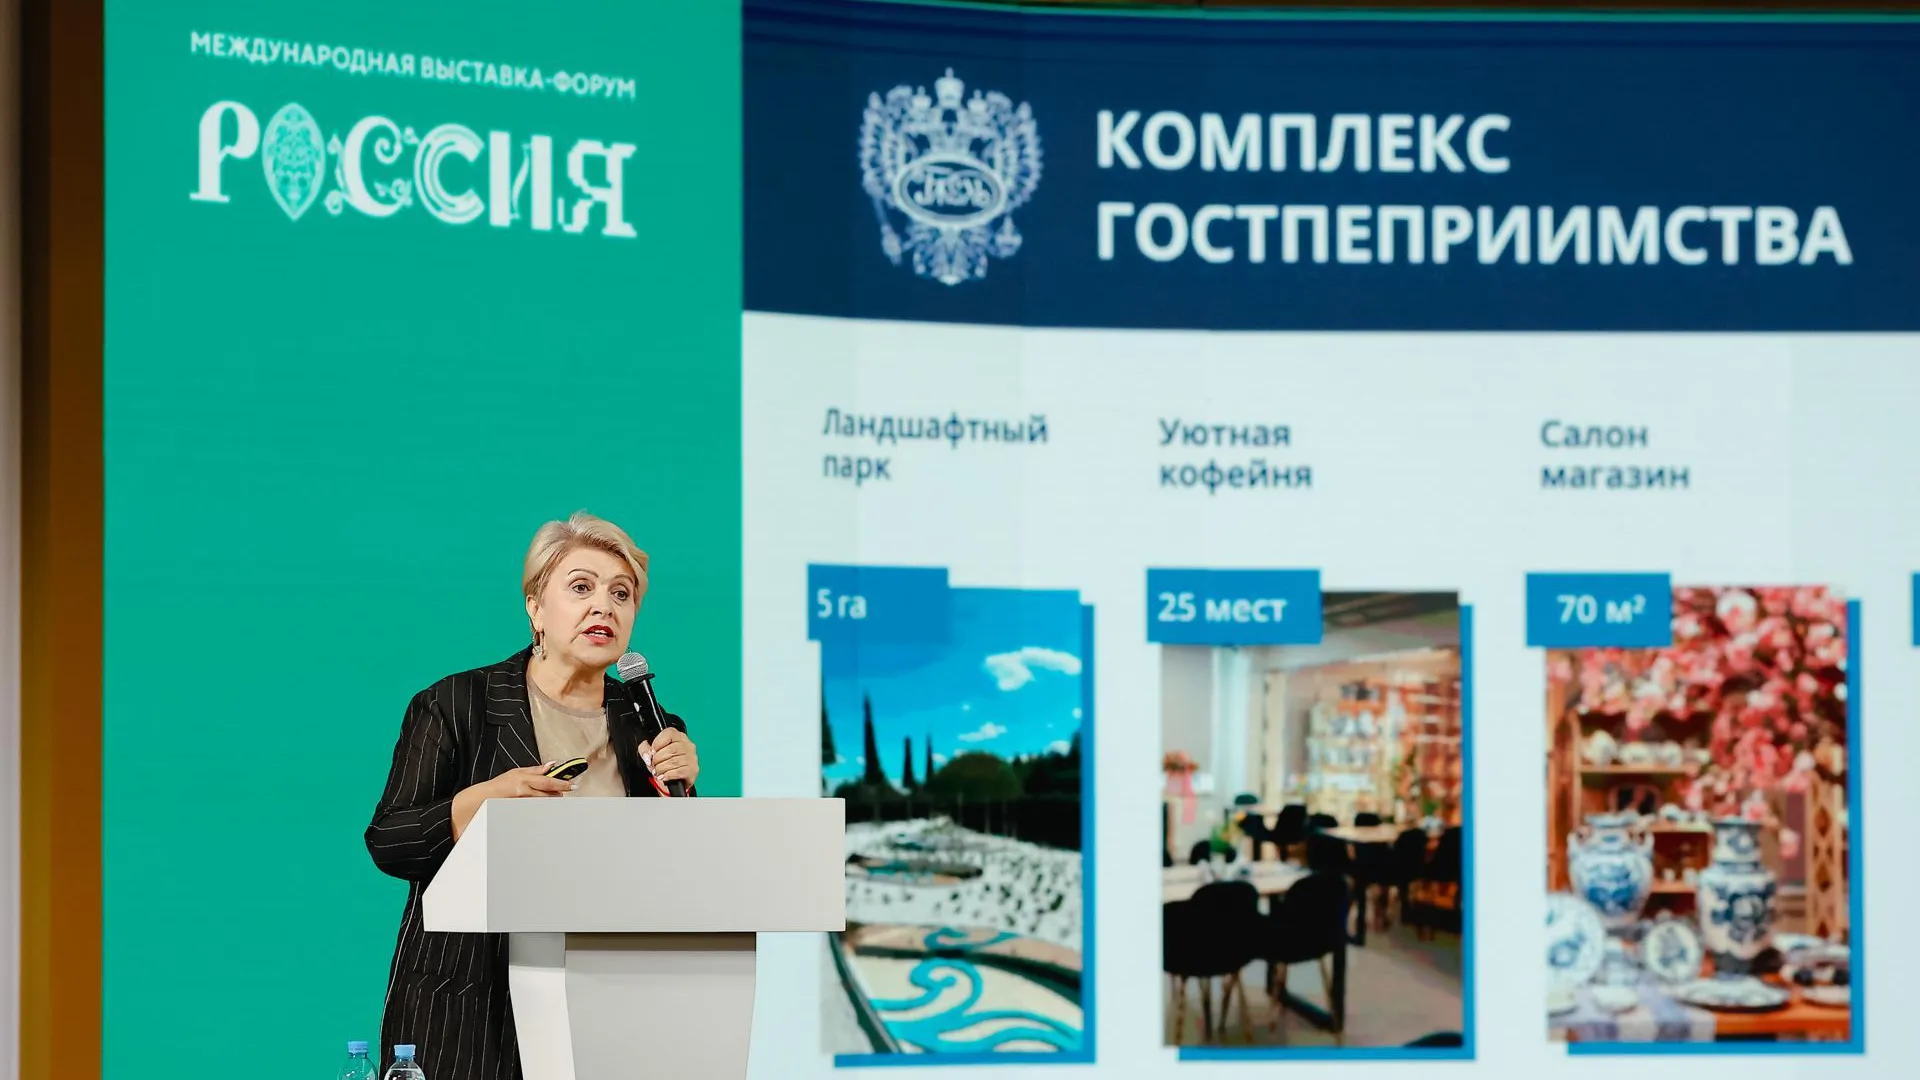 Московская область представила свои проекты на форуме «Пространство будущего» в рамках выставки «Россия»